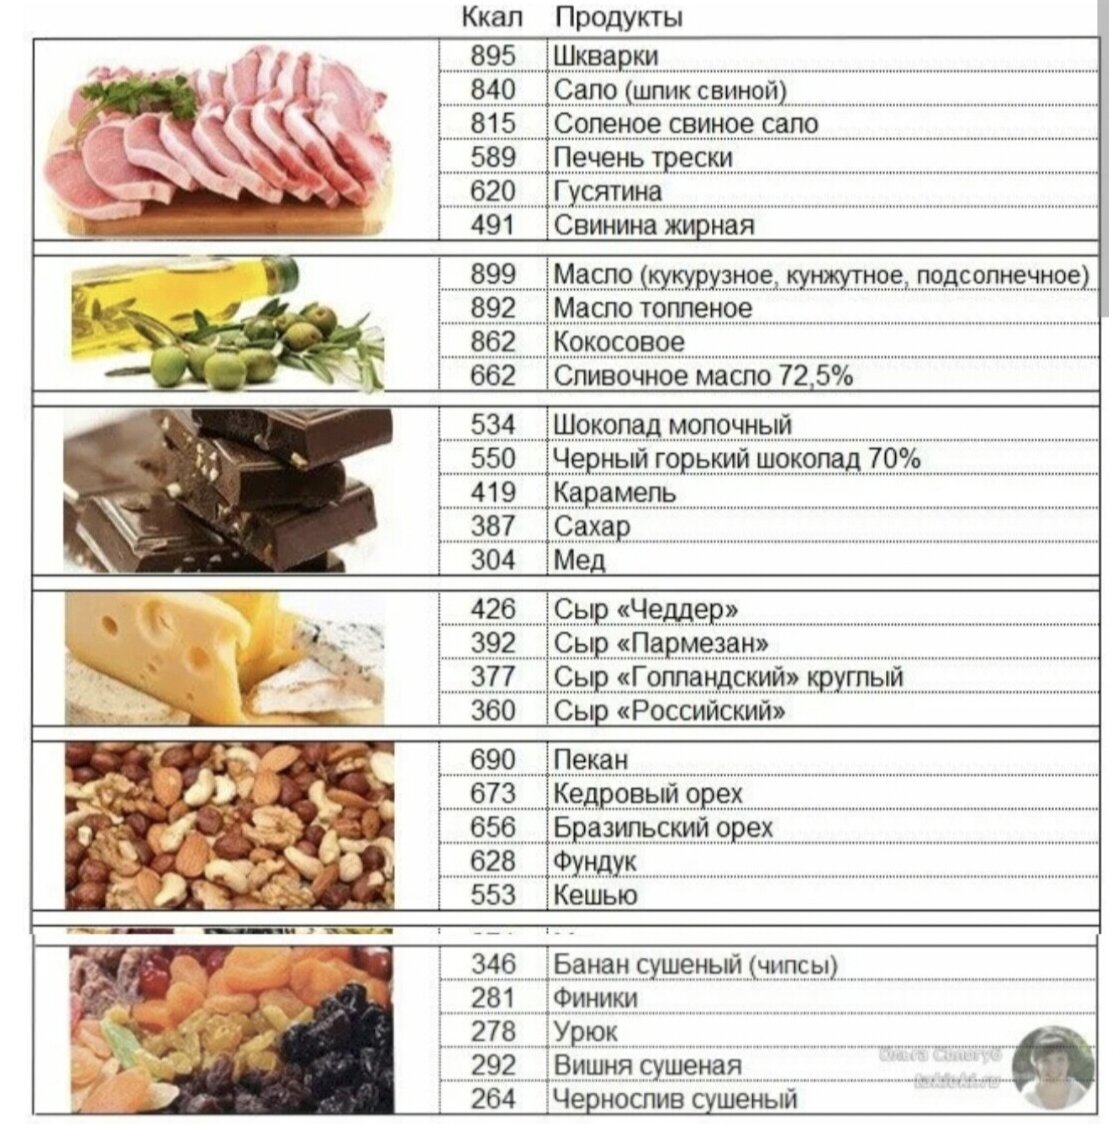 Как разбираться в калориях и жирах. 150 Калорий это сколько кг. 150 килокалорий